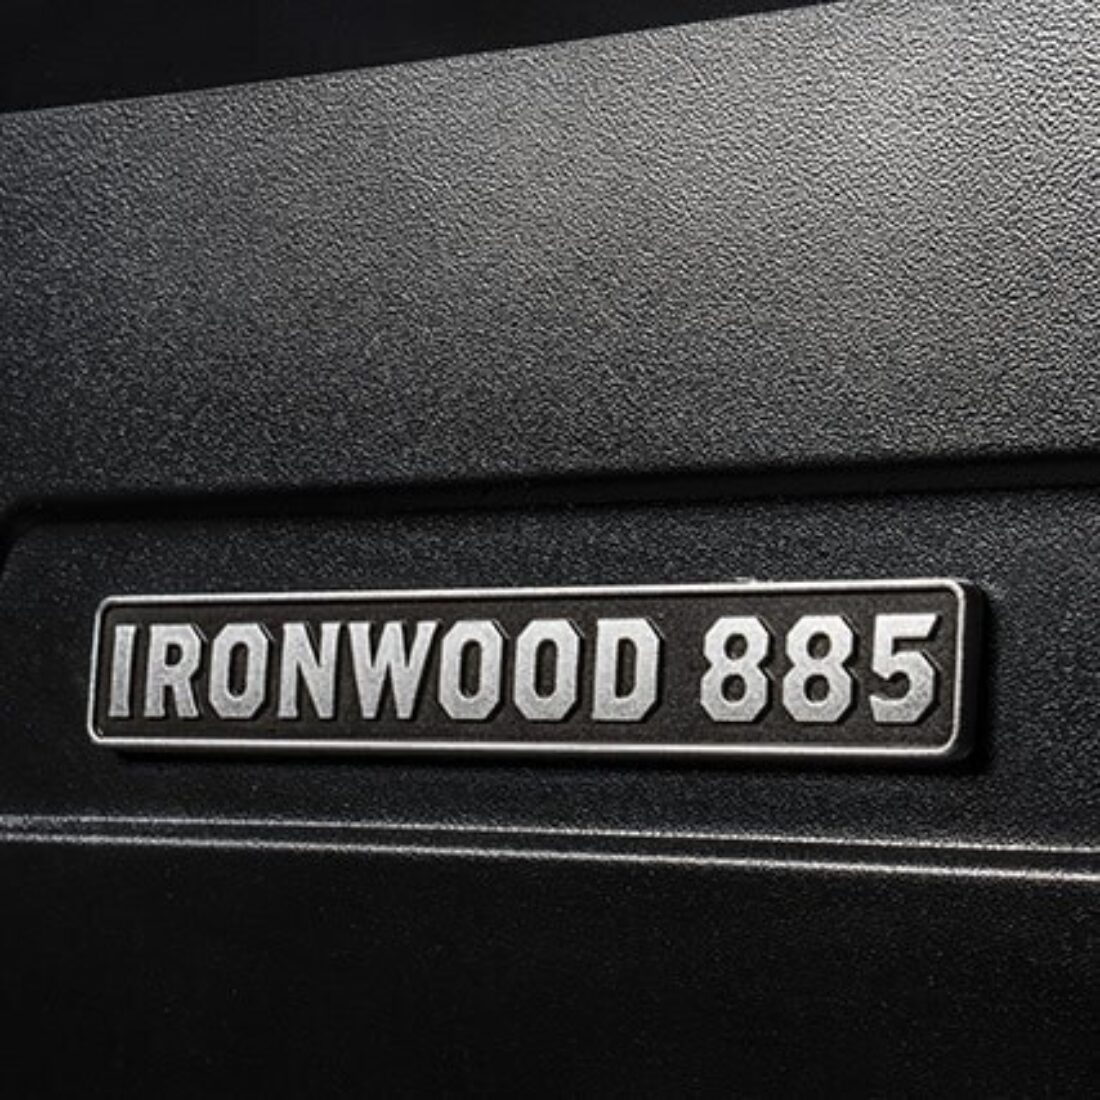 Ironwood 885 Badge